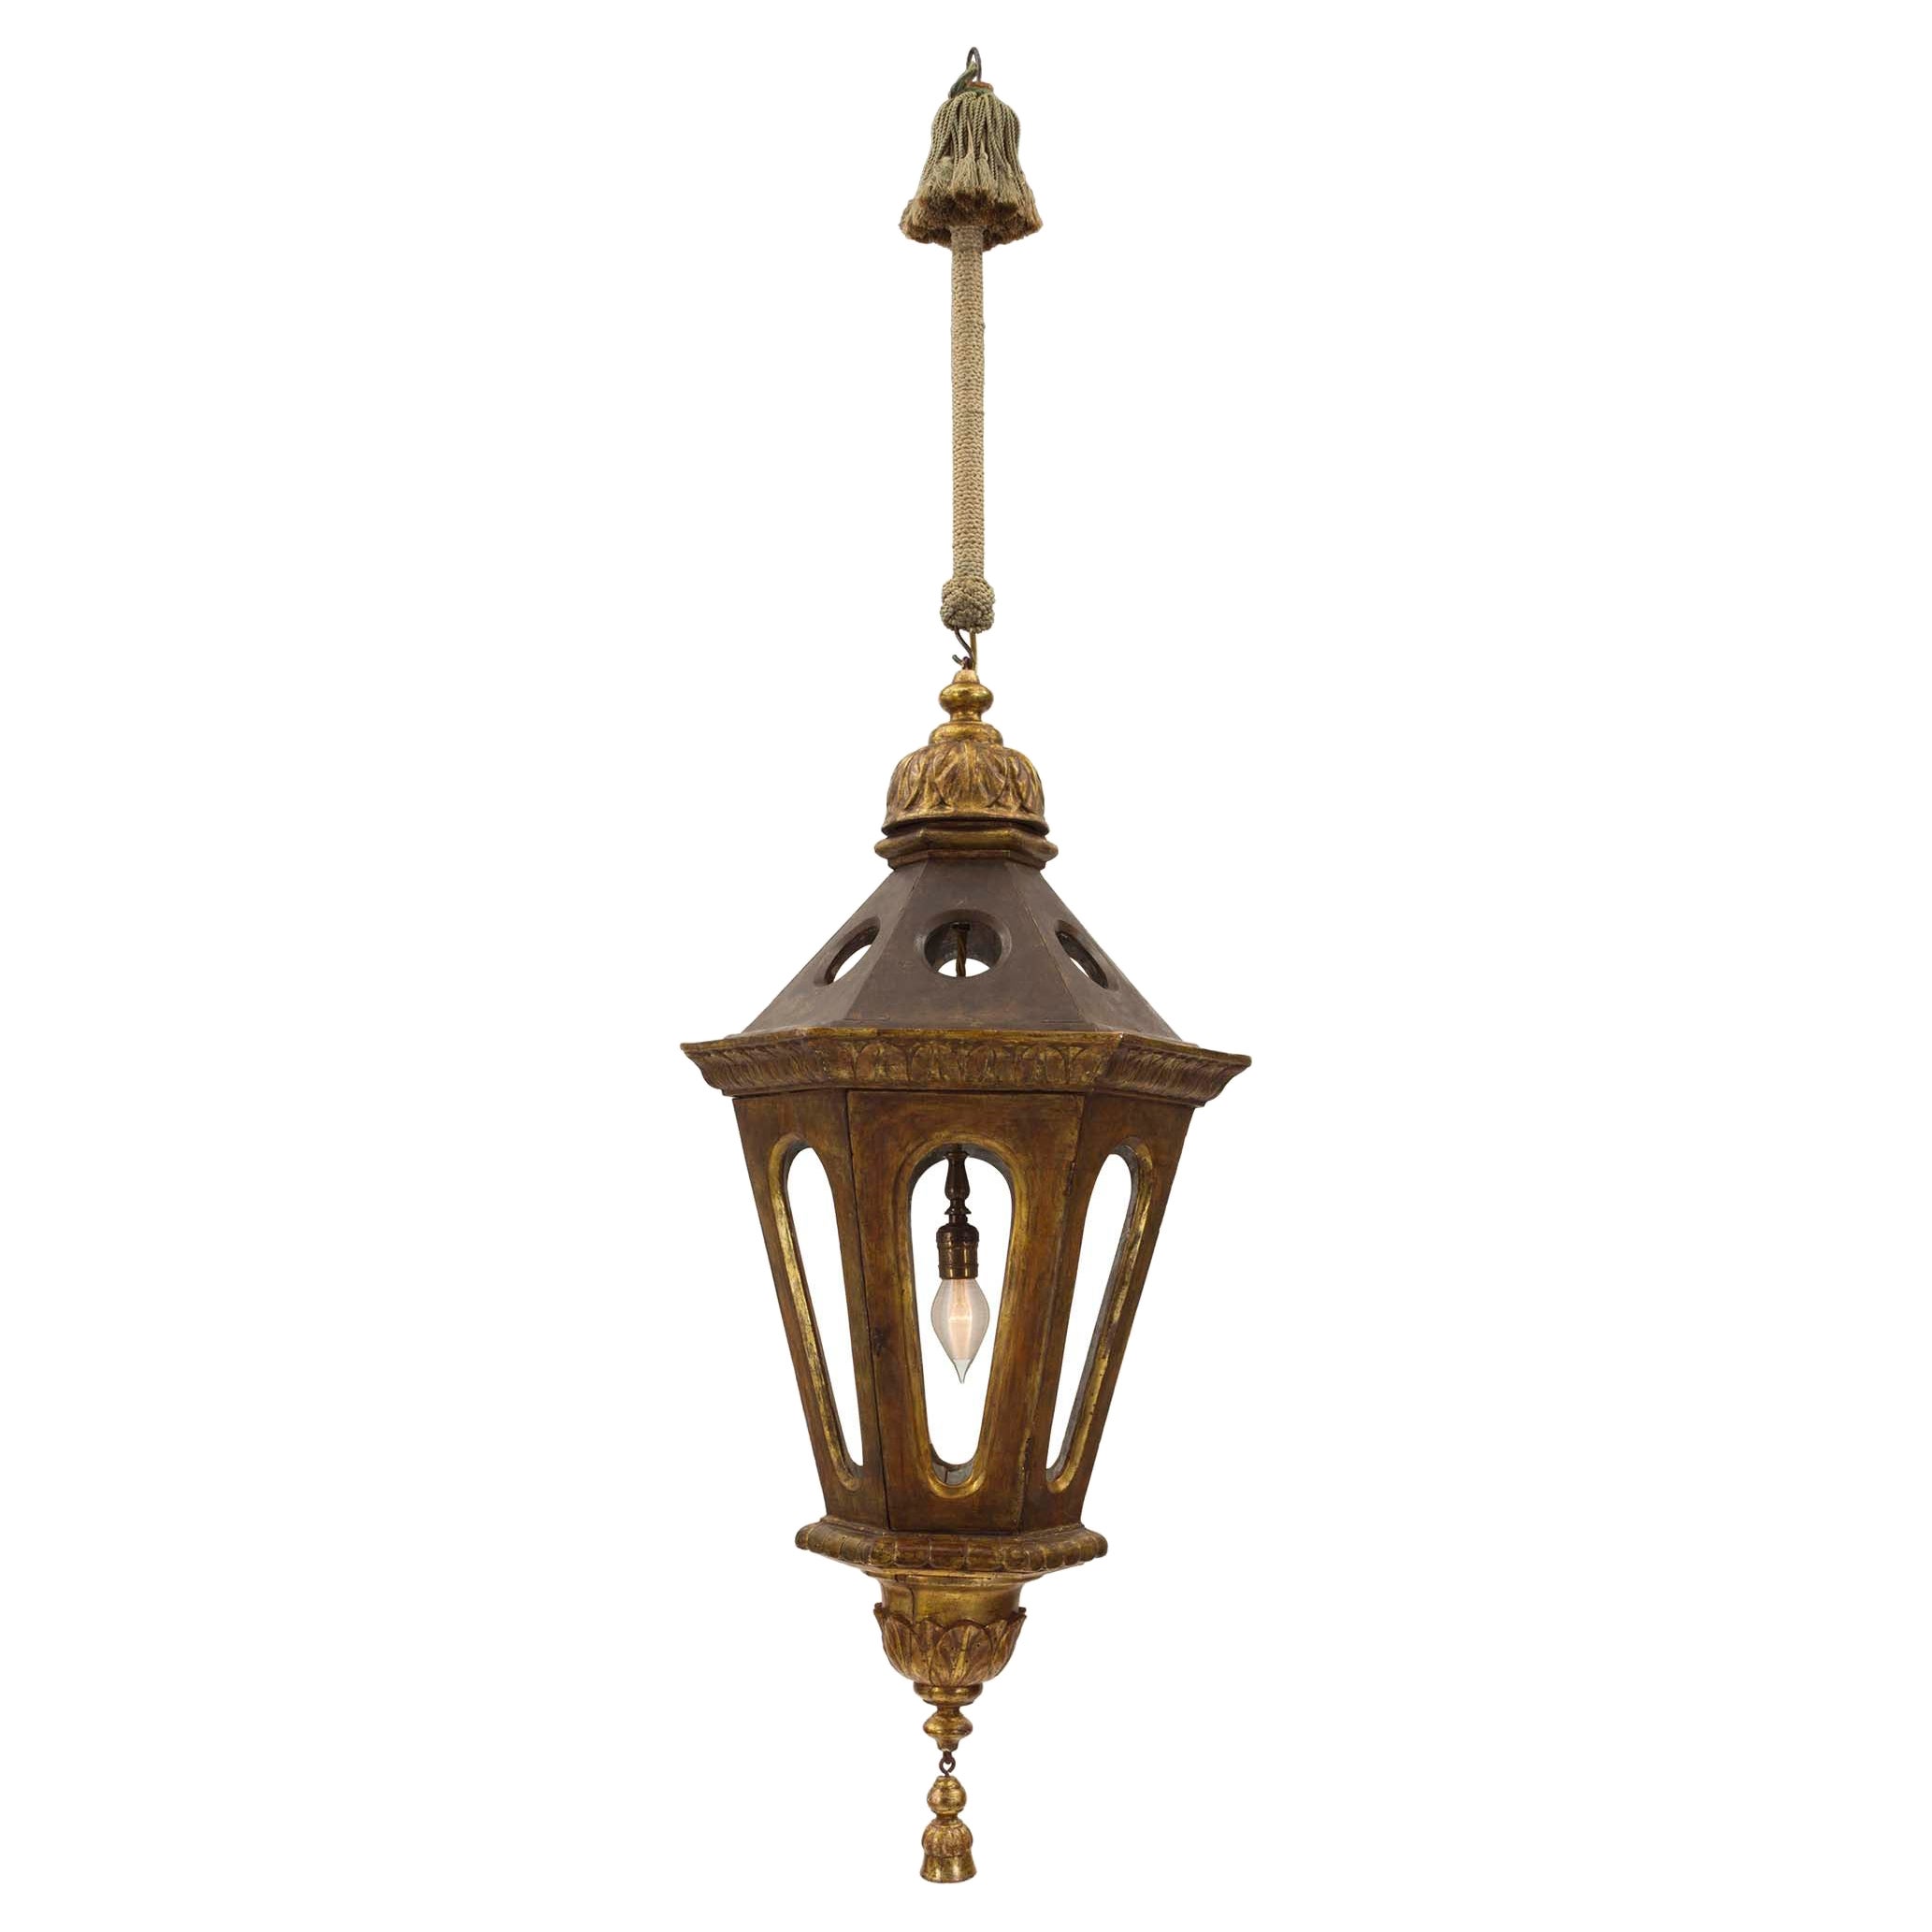 Lanterne vénitienne italienne du 18ème siècle polychrome et Mecque